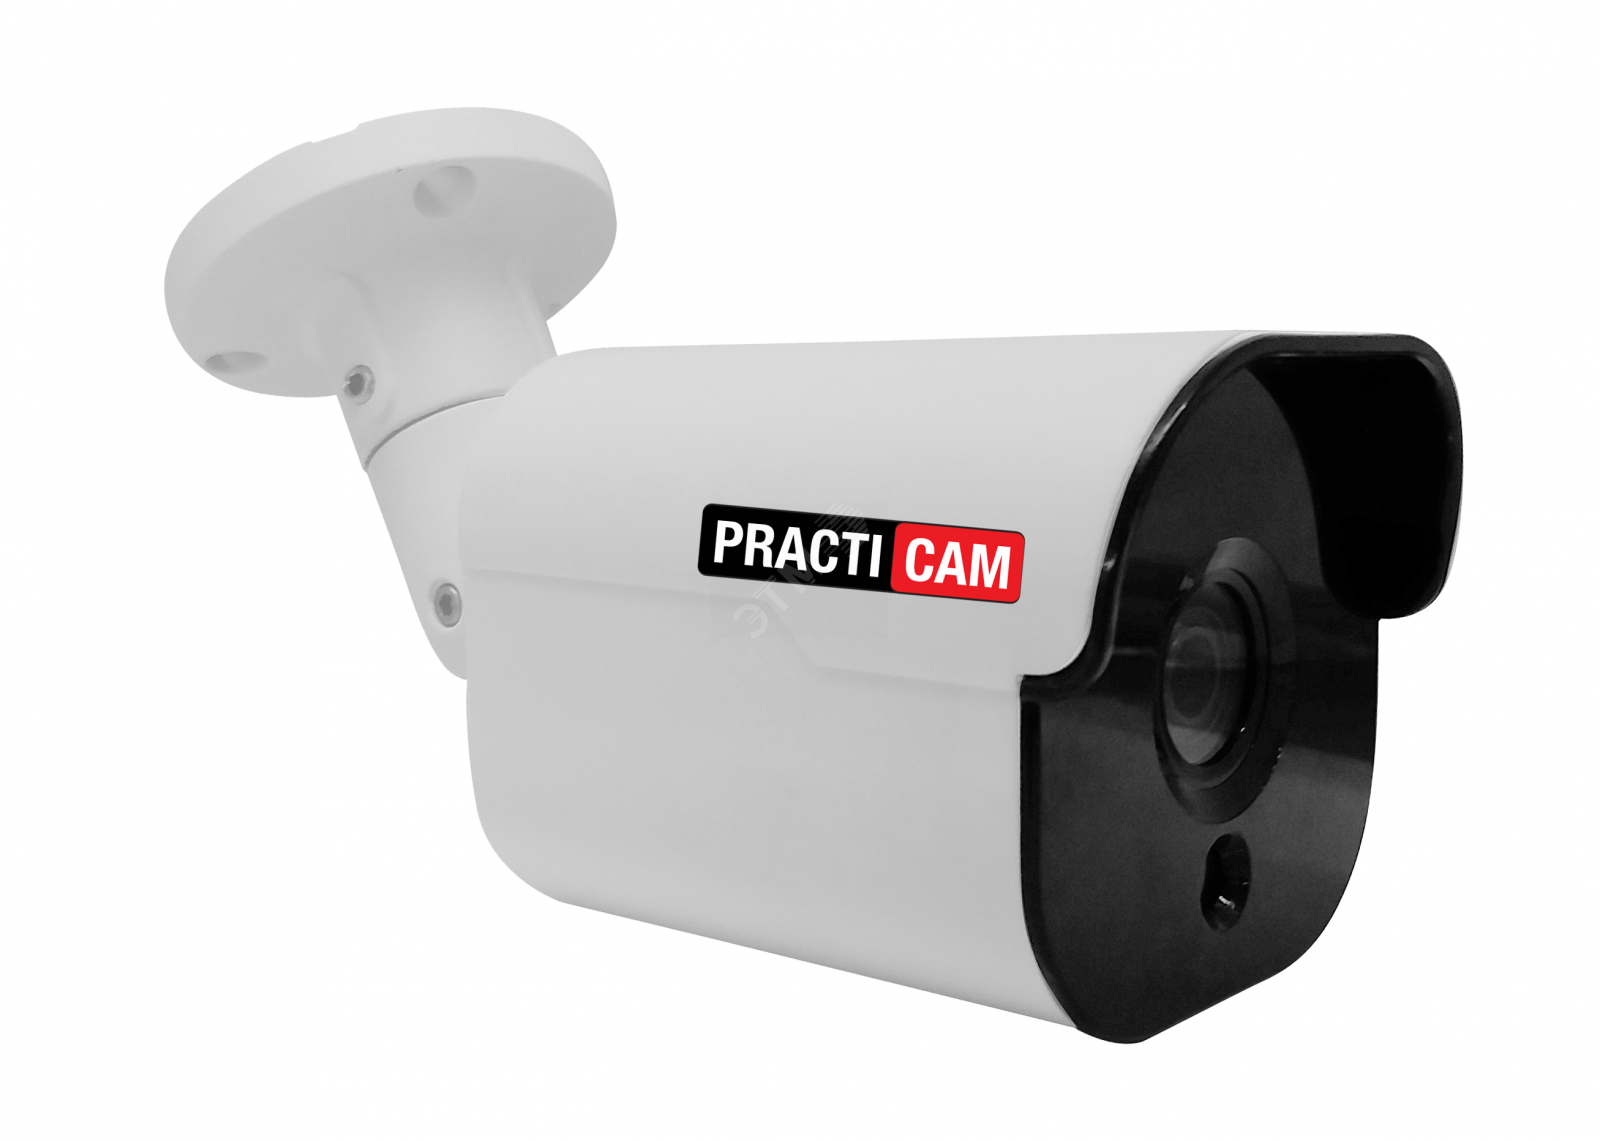 Камера видеонаблюдения 3 мп. Pt-mhd1080p-ir PRACTICAM уличная. Beward IP камера b2710rcvz. PRACTICAM pt-mhd5m-MC. Уличная IP видеокамера PRACTICAM pt-ipc5m-ir.2.